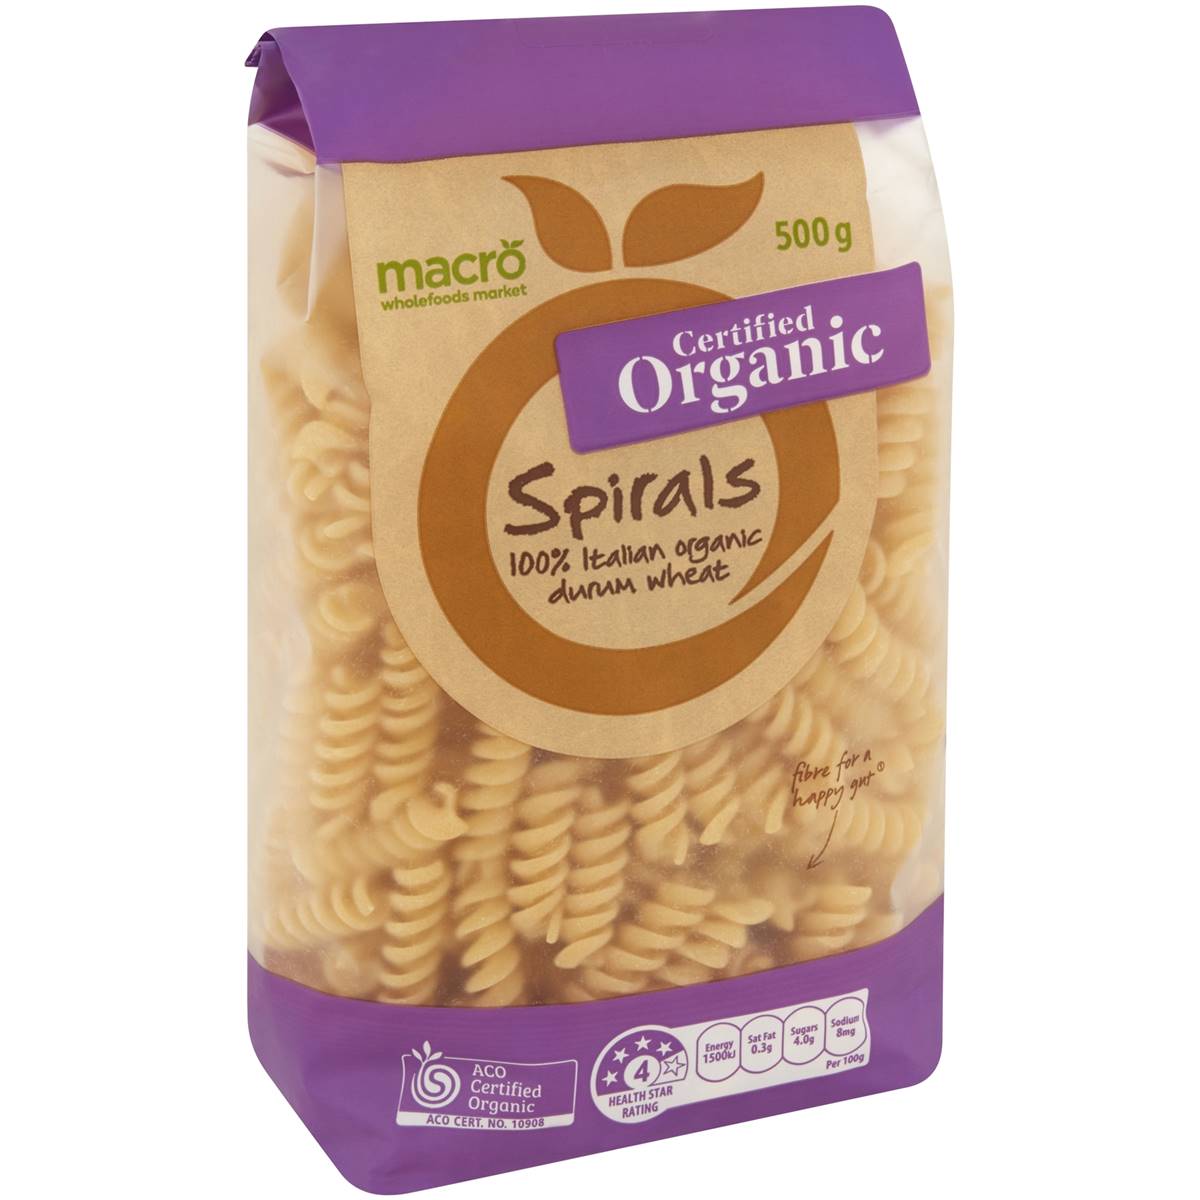 Macro Organic Spirals Pasta